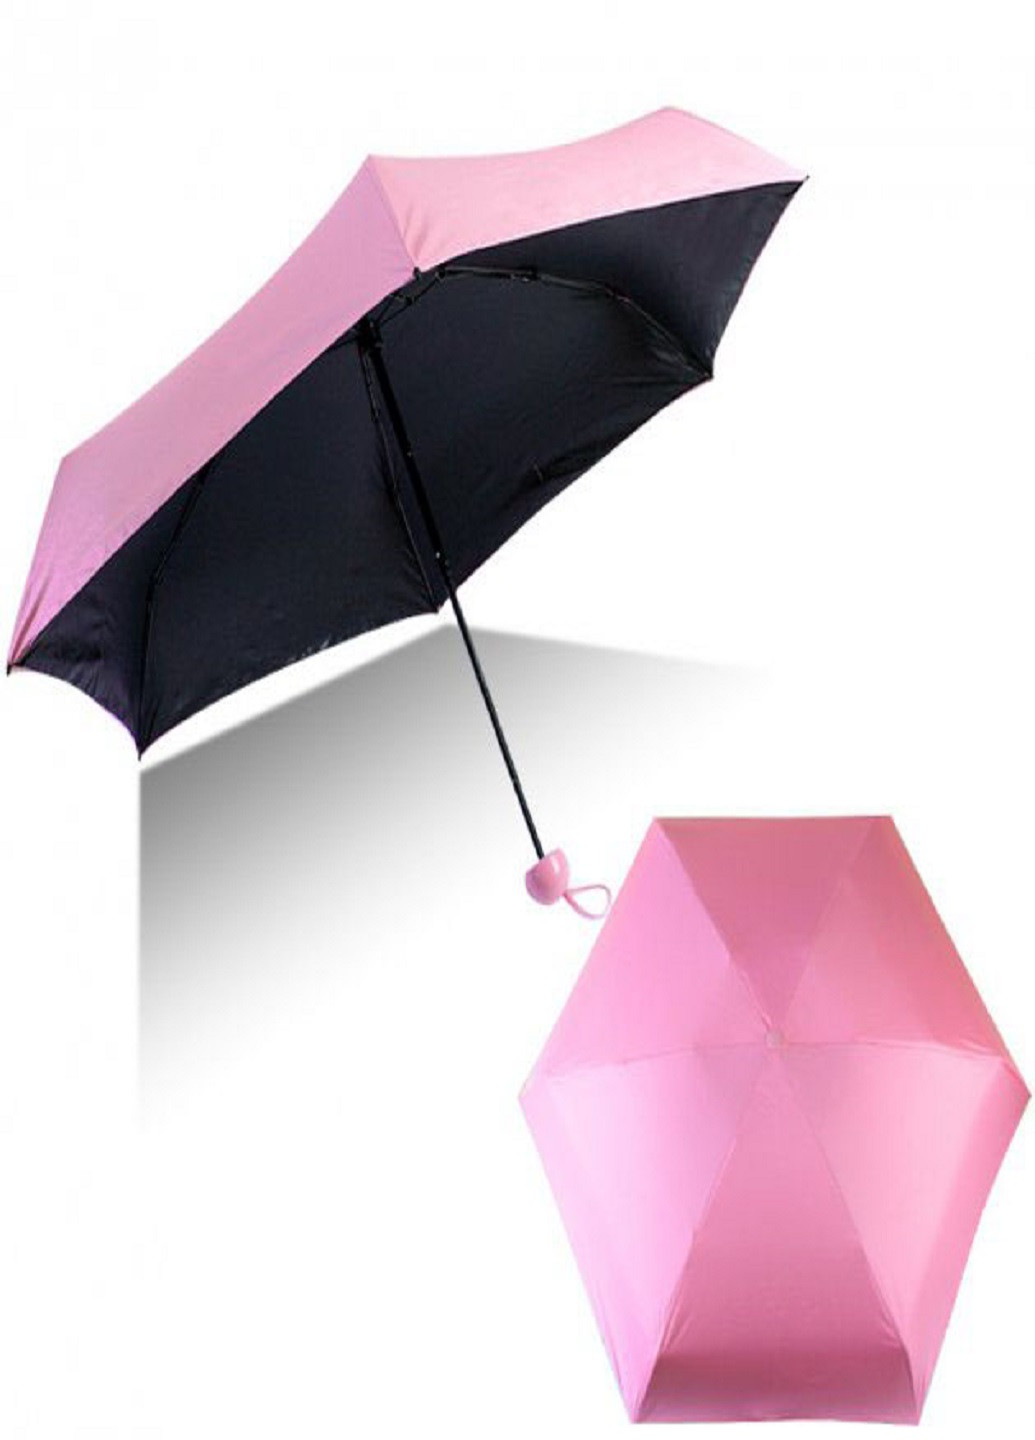 Компактный портативный зонтик в капсуле-футляре Розовый VTech (258235164)